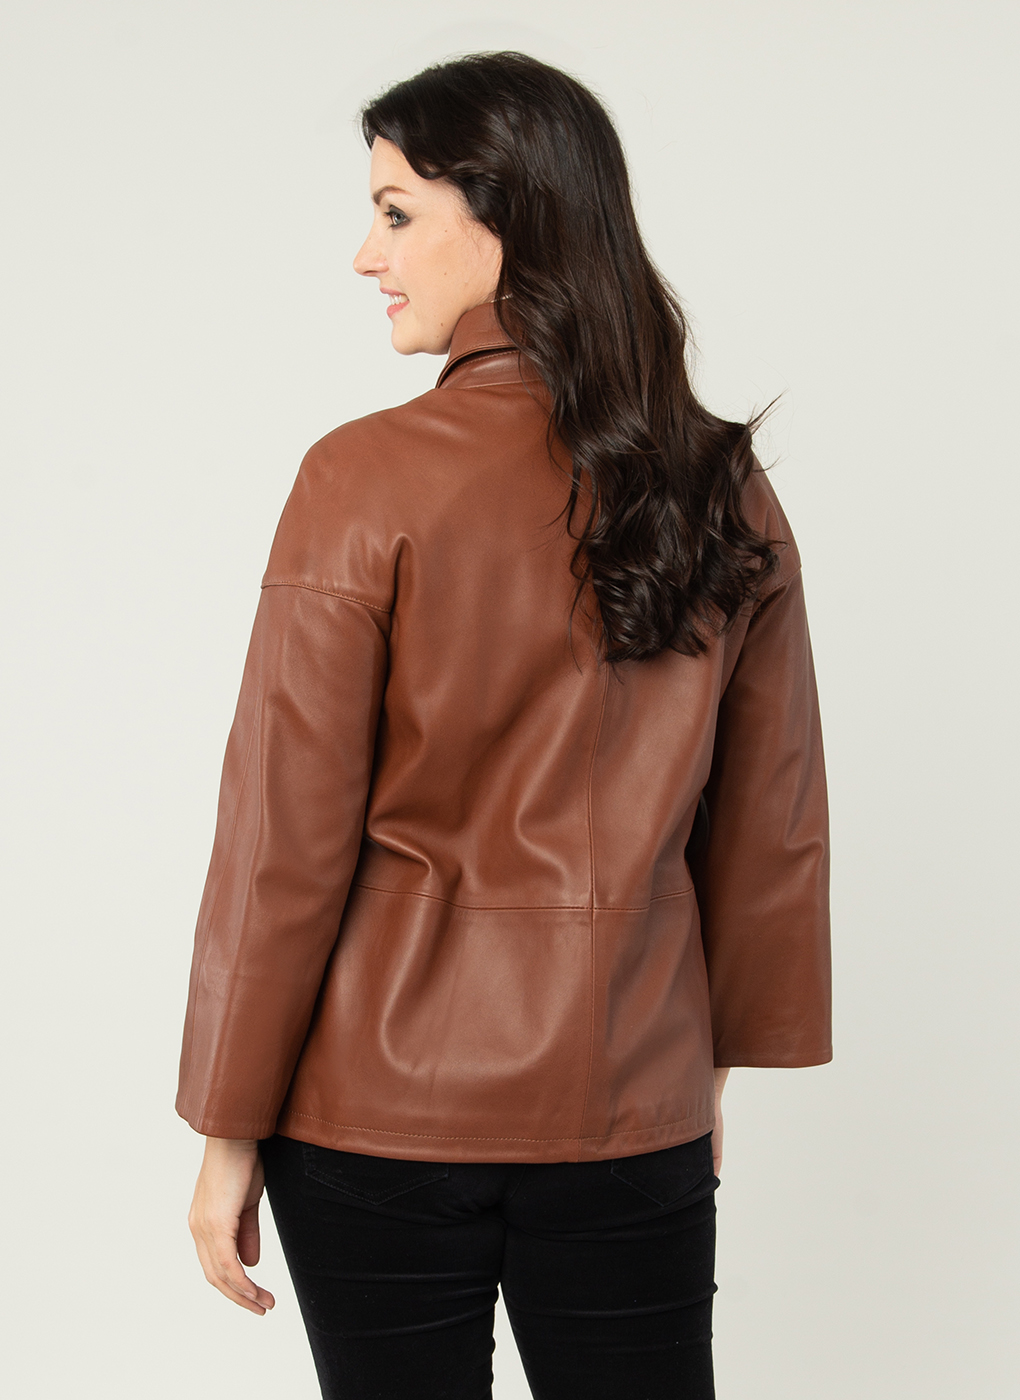 Кожаная куртка женская Каляев 52511 коричневая 54 RU